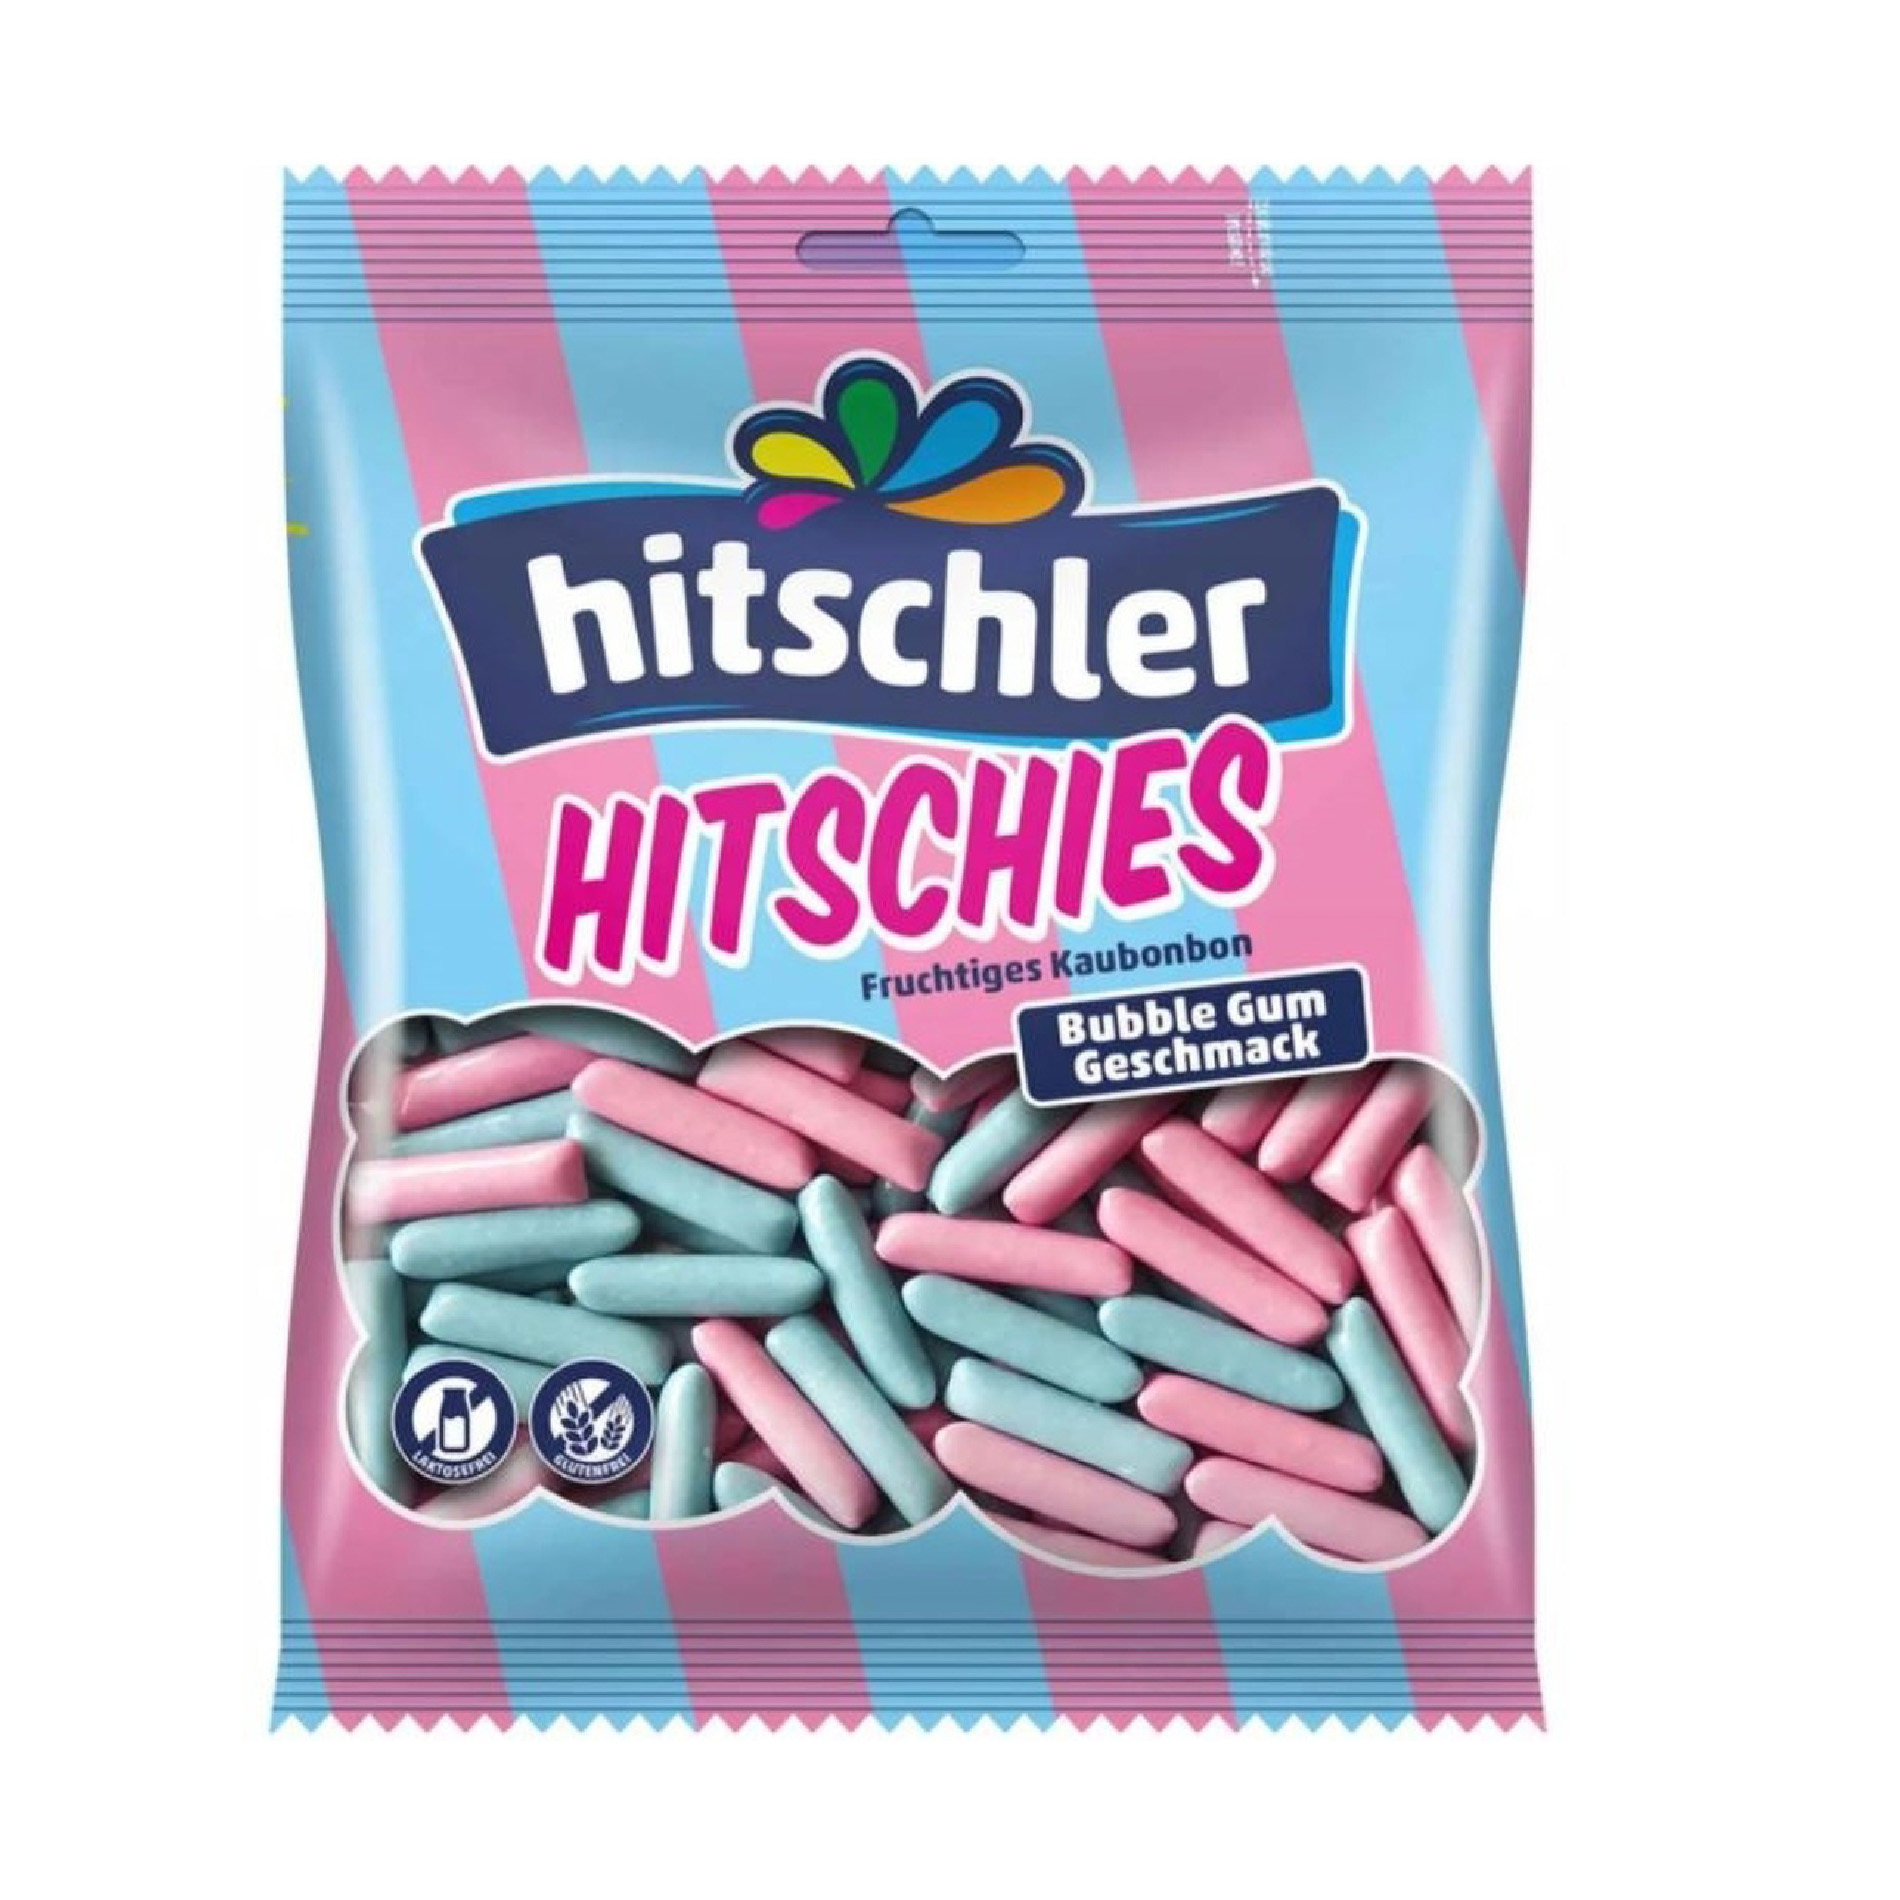 Кодов бабл гам. Hitschler / конфеты бабл гам. Конфеты Hitschler Bubble Gum 140 гр.. Жевательные конфеты. Леденцы со вкусом бабл гам.